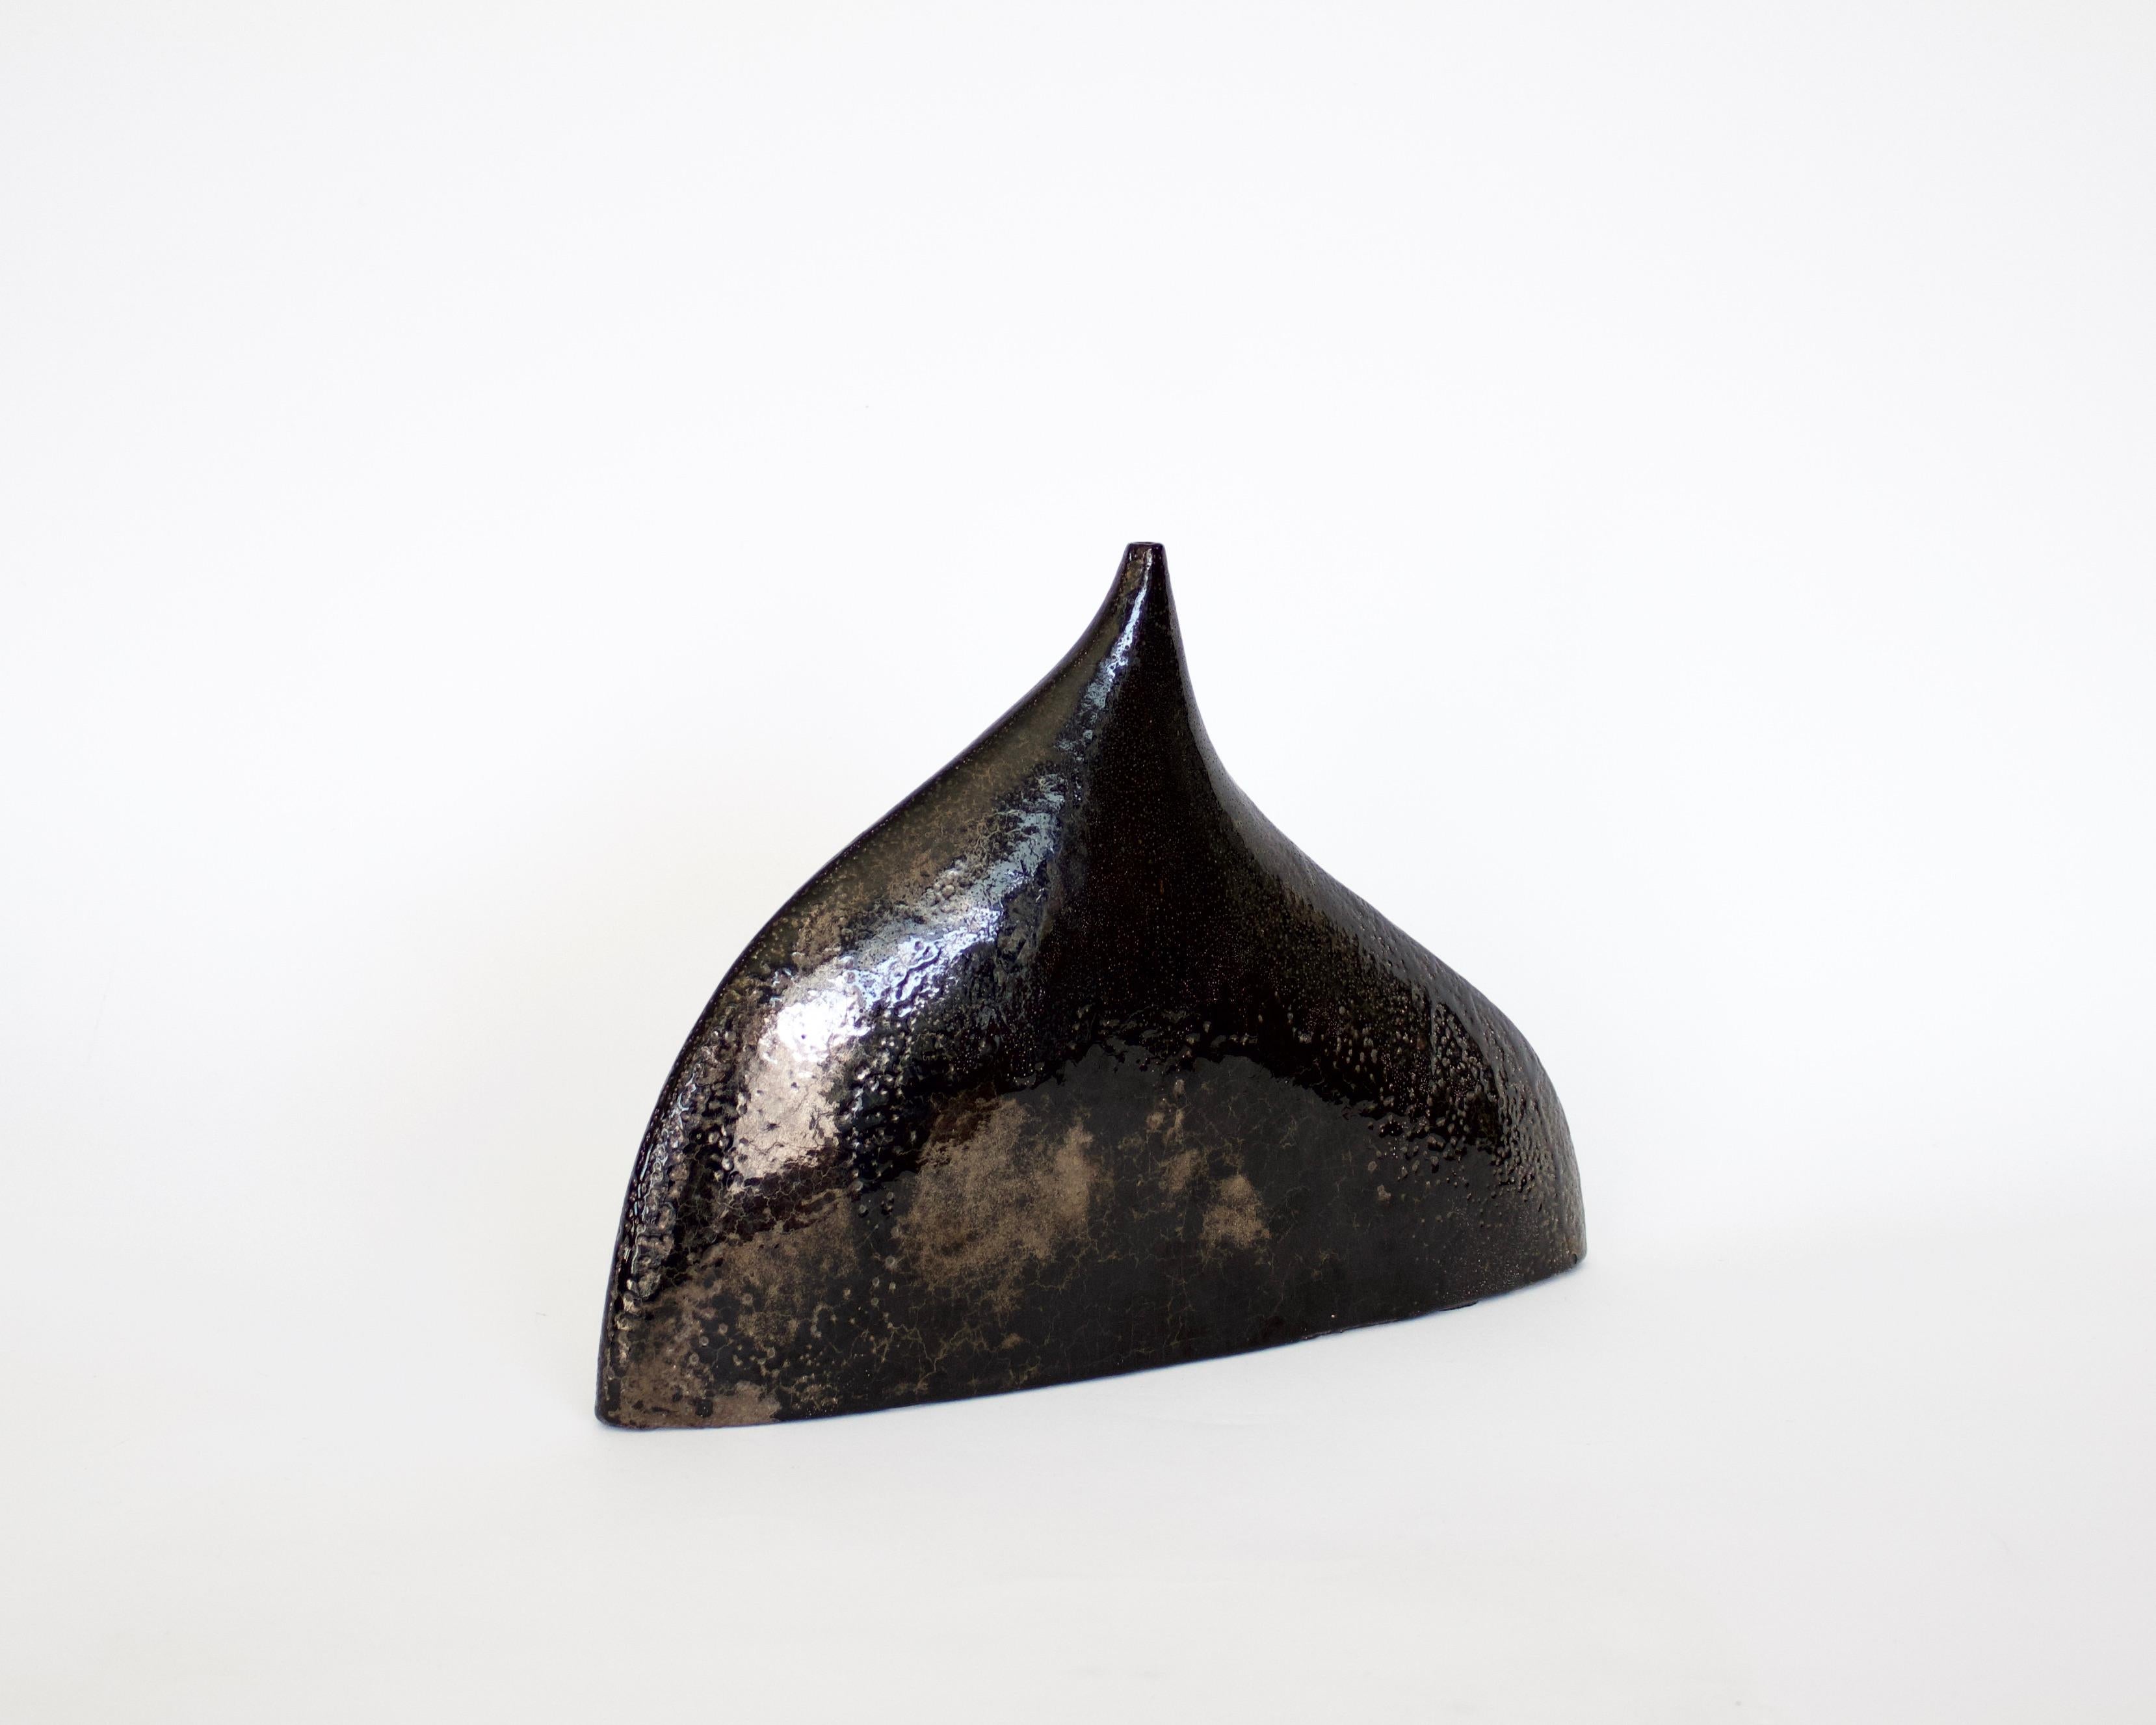 Vase sculptural en céramique française d'Andre Brilliante, d'un brun noir brillant avec des éclats de cuivre. C1966.
Semblable à celui de la photo du livre, Andre Masson par Thomas Leporrier, p 183.